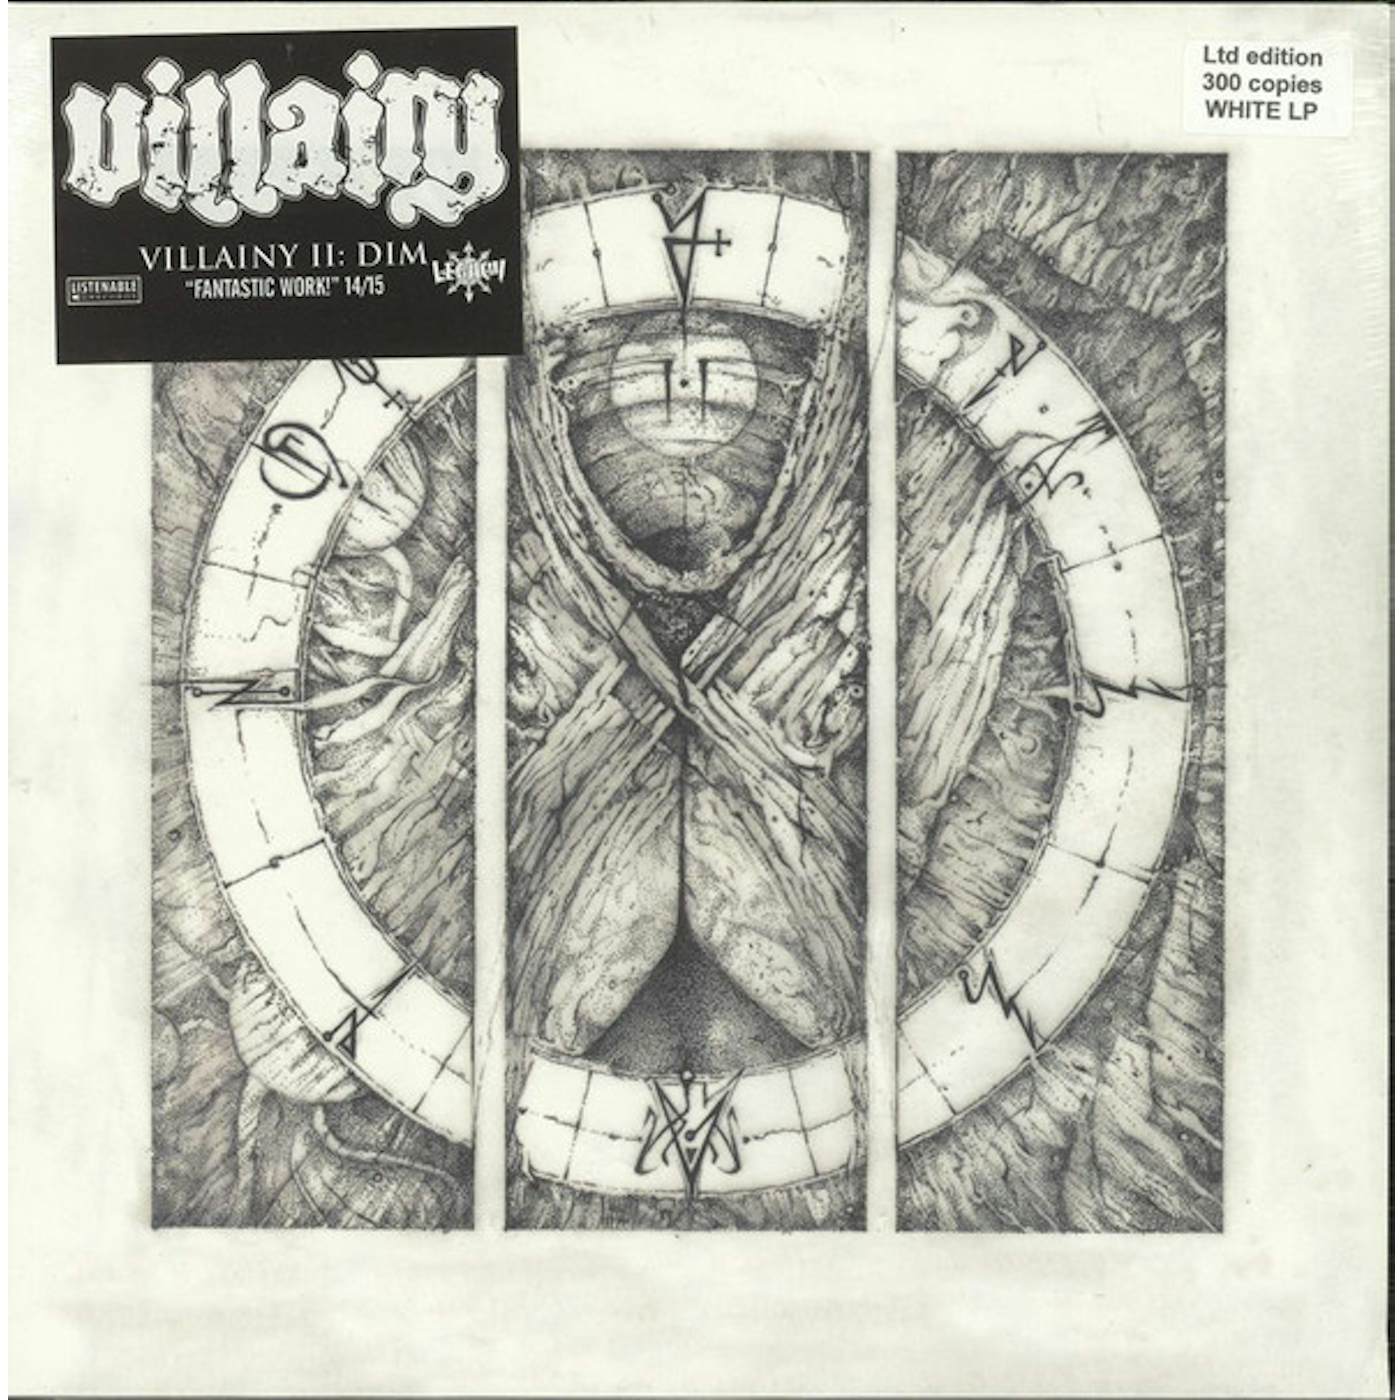 Villainy Ii: Dim Vinyl Record